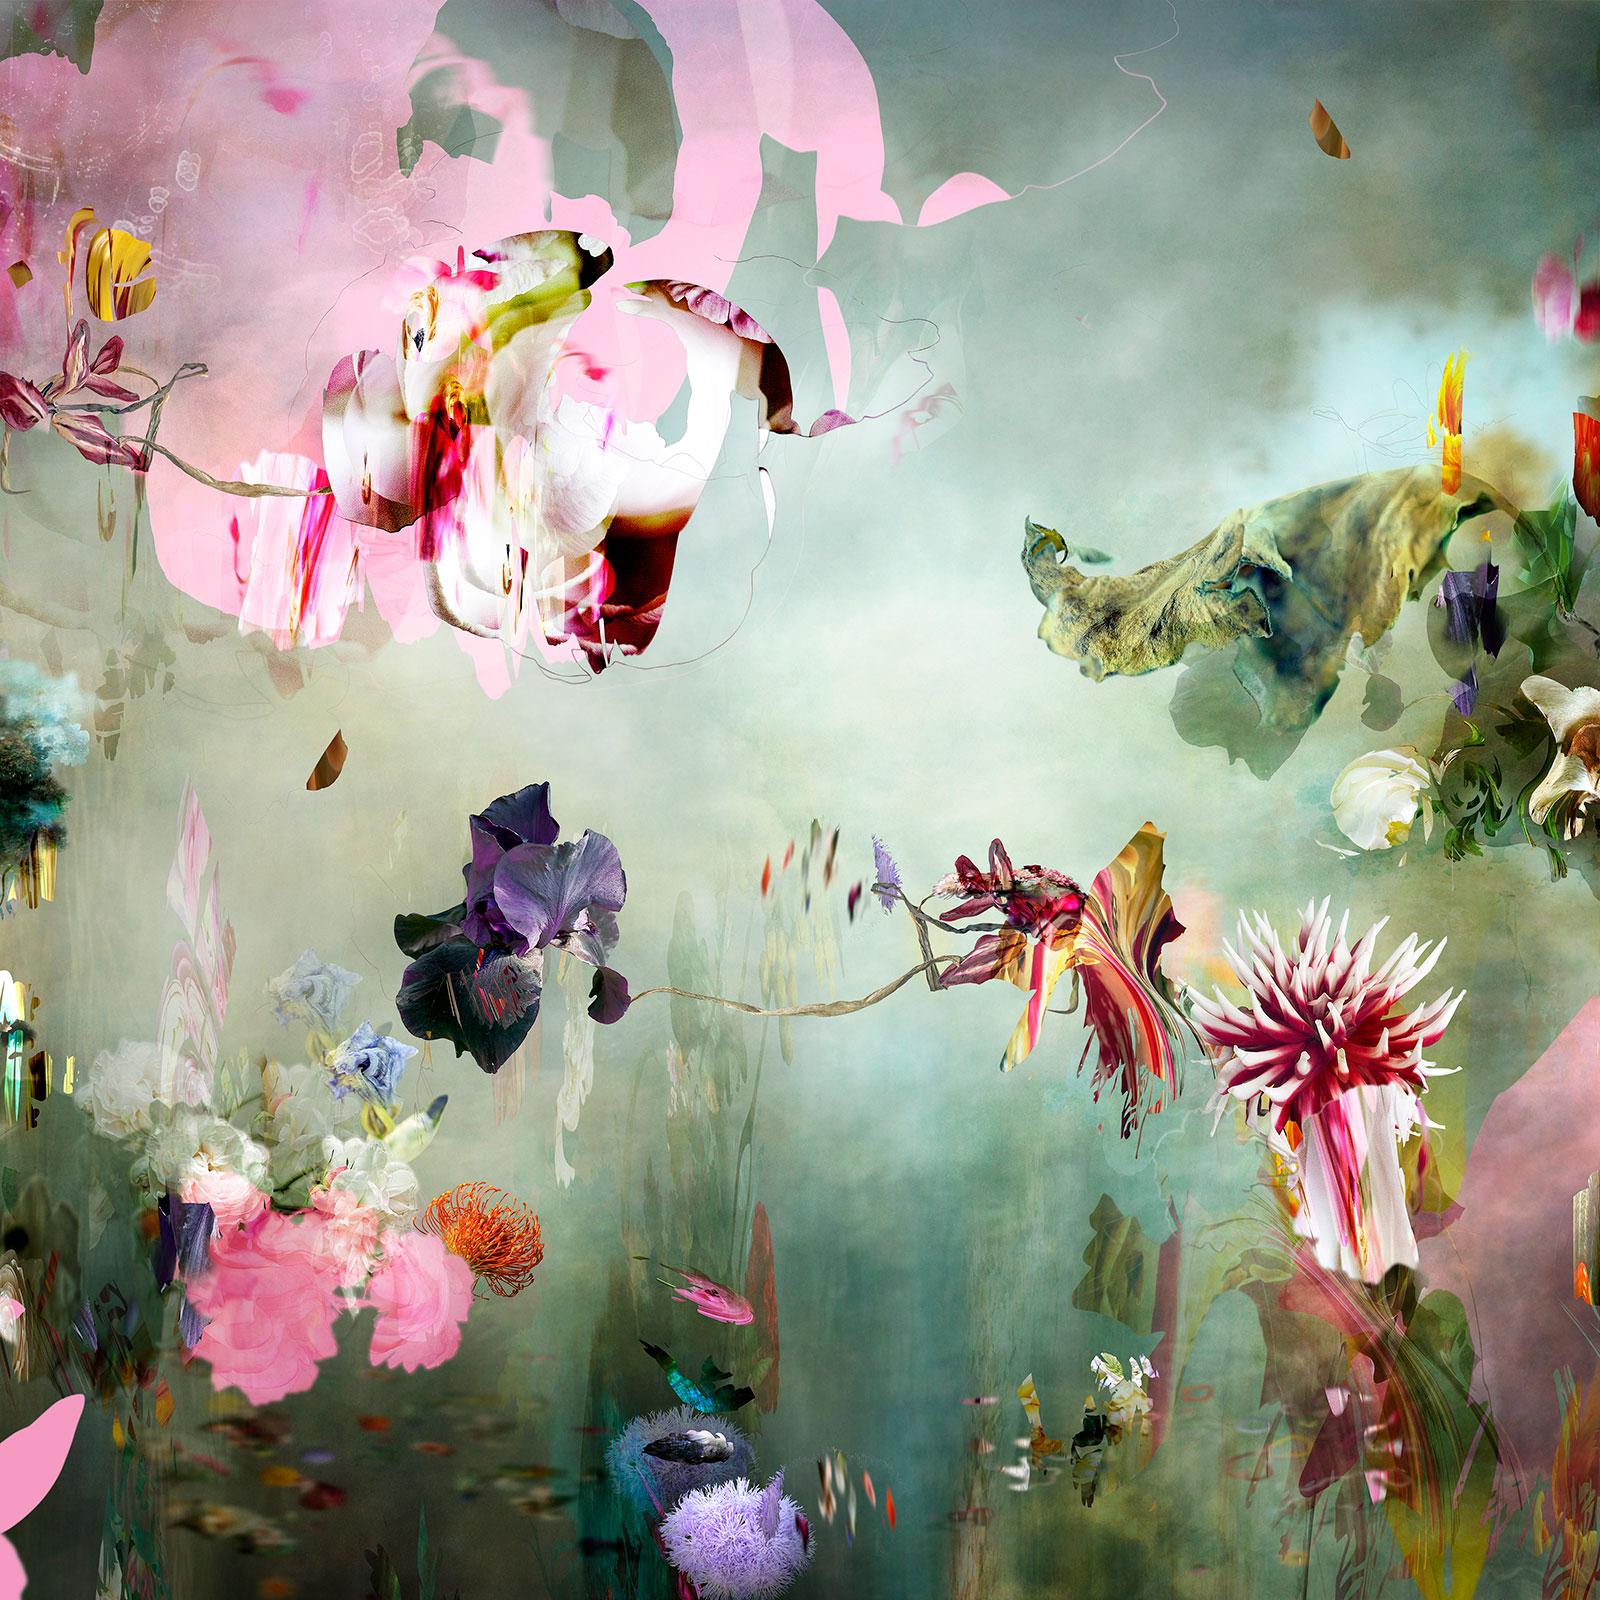 Still-Life Photograph Isabelle Menin - Nouvelle Rome #2 - Photographie contemporaine de paysage floral aux couleurs pastel douces